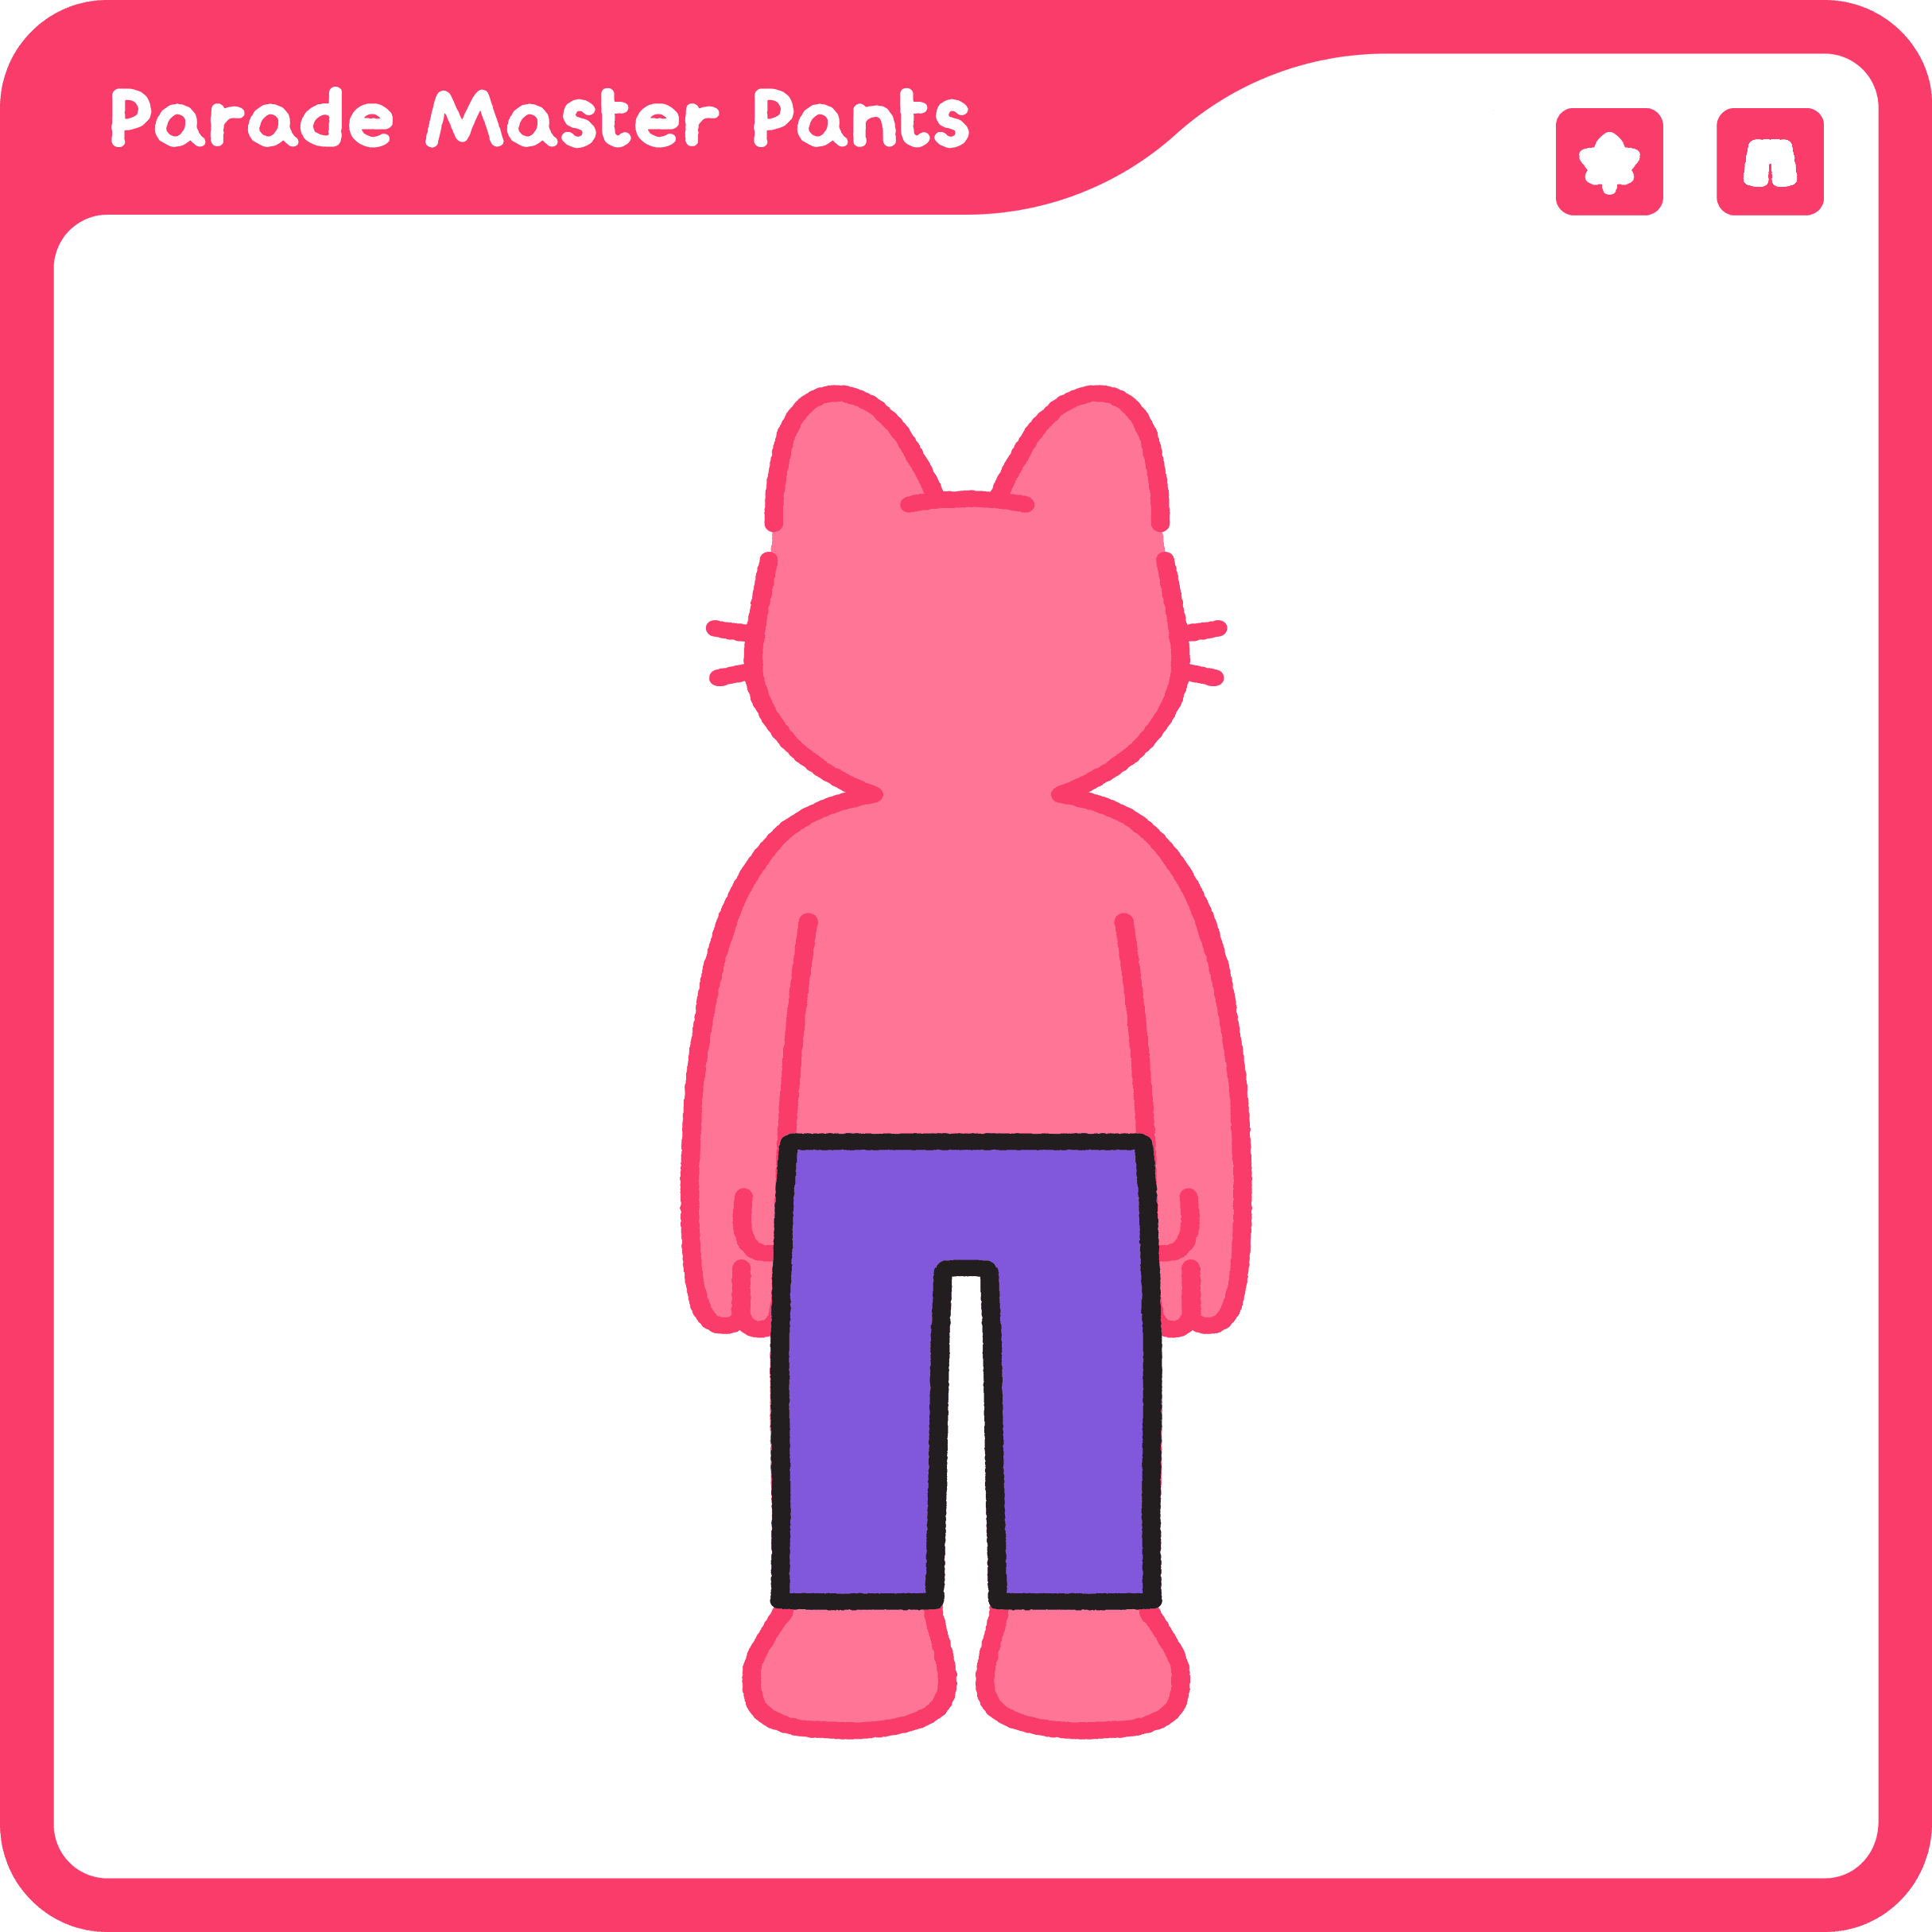 Parade Master Pants